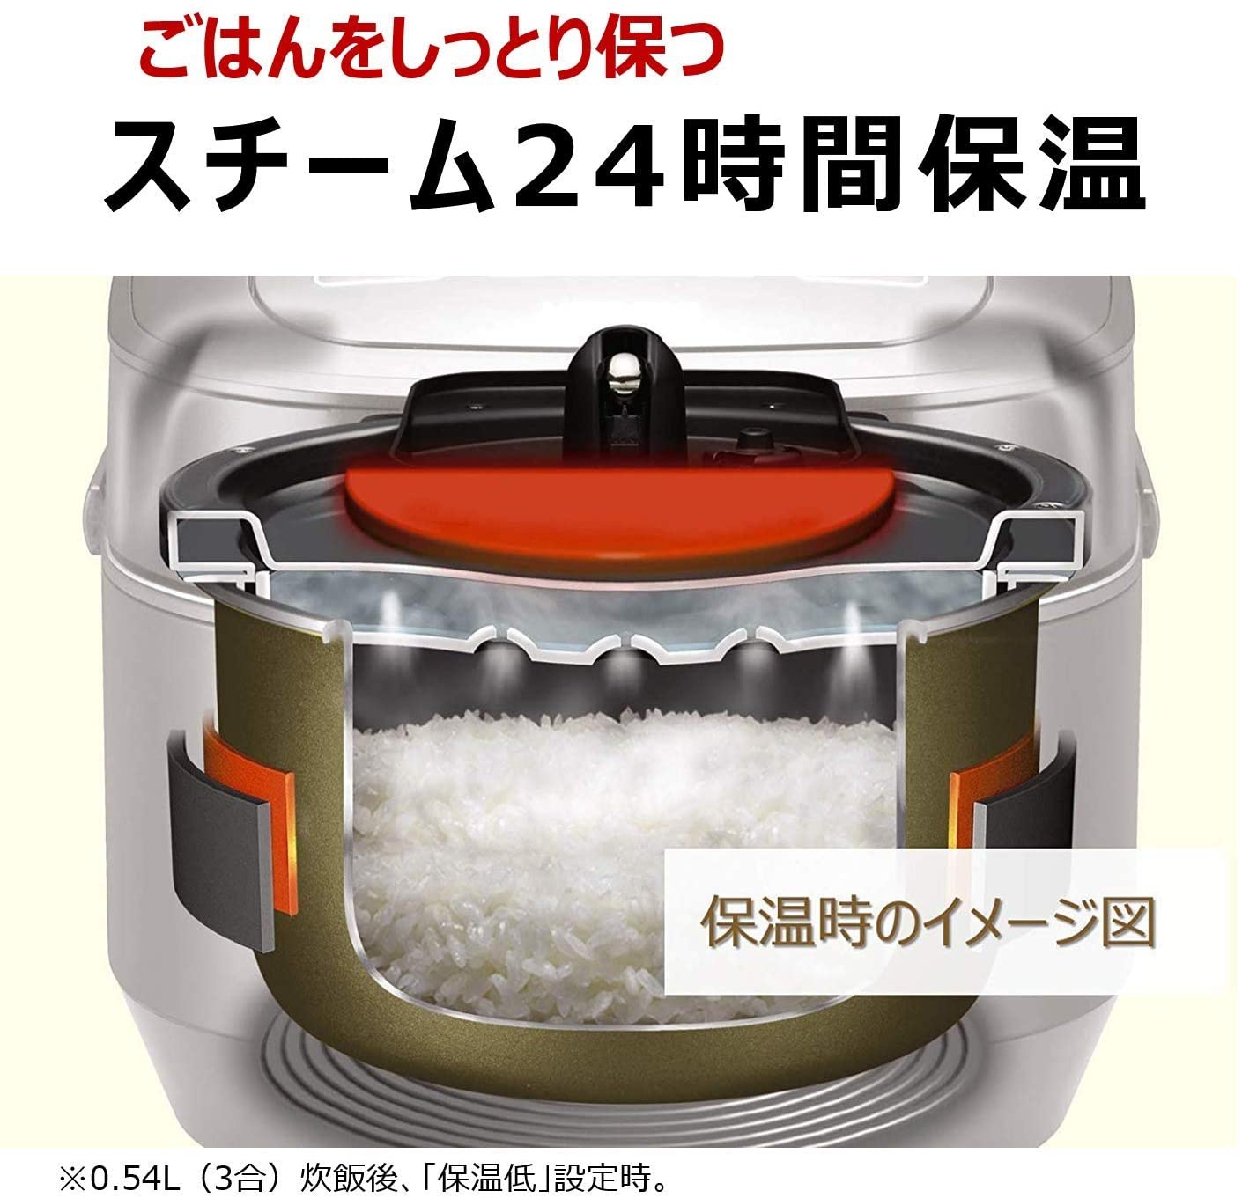 日立(HITACHI) IHジャー炊飯器 RZ-AV100M R メタリックレッドの商品画像8 